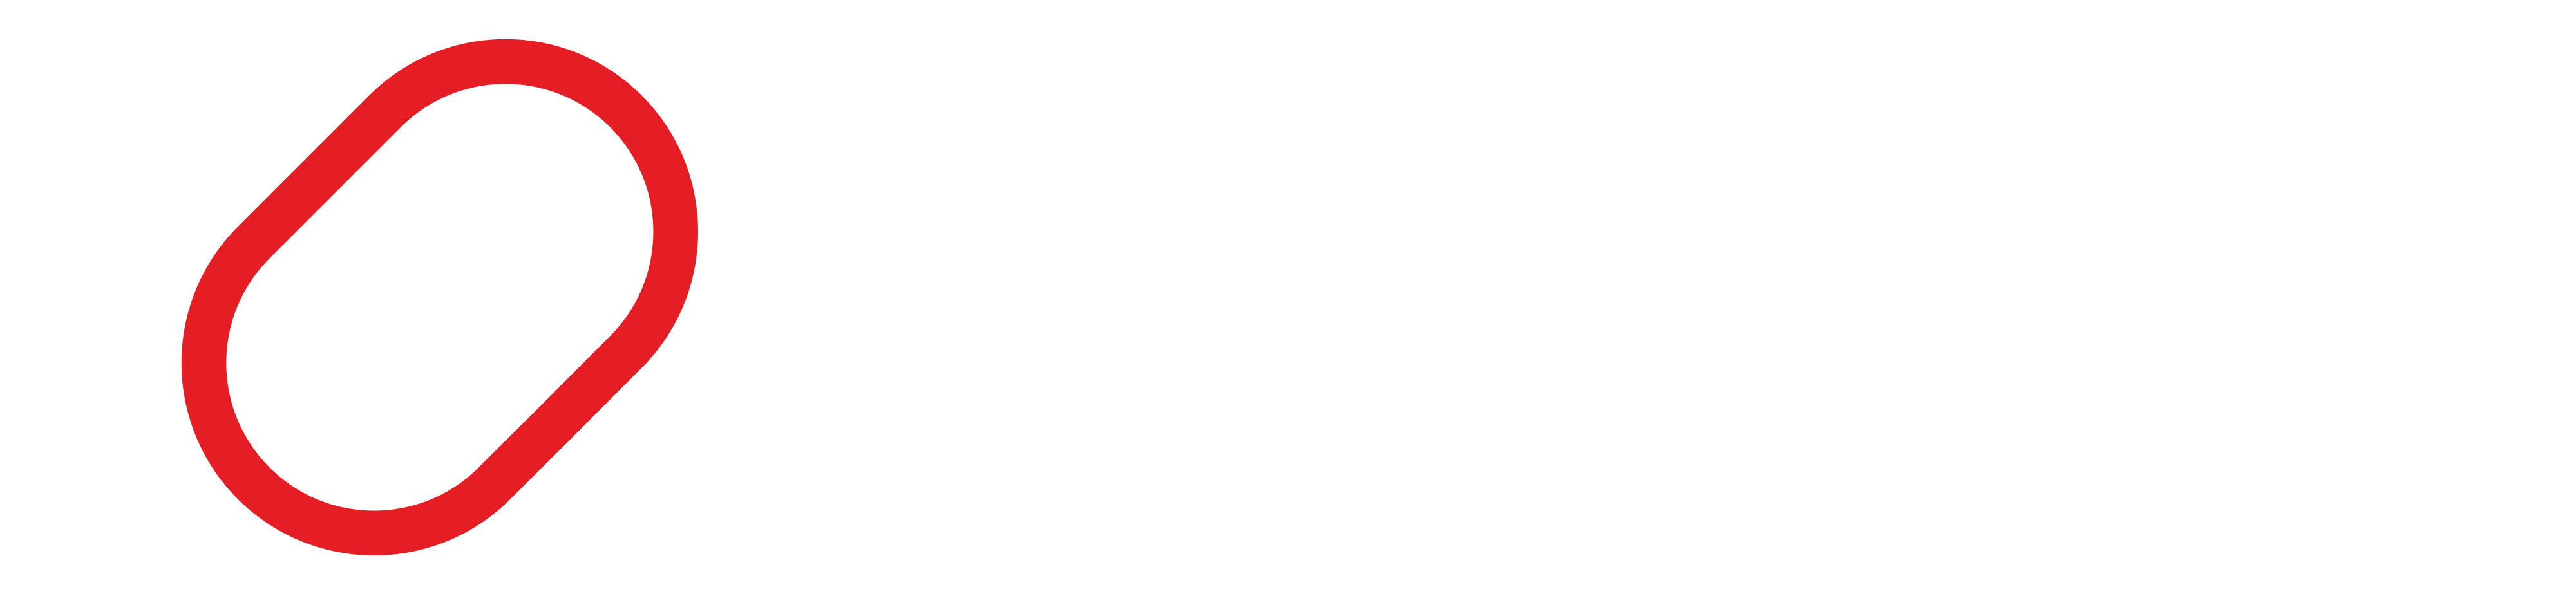 Herzretter Leipzig